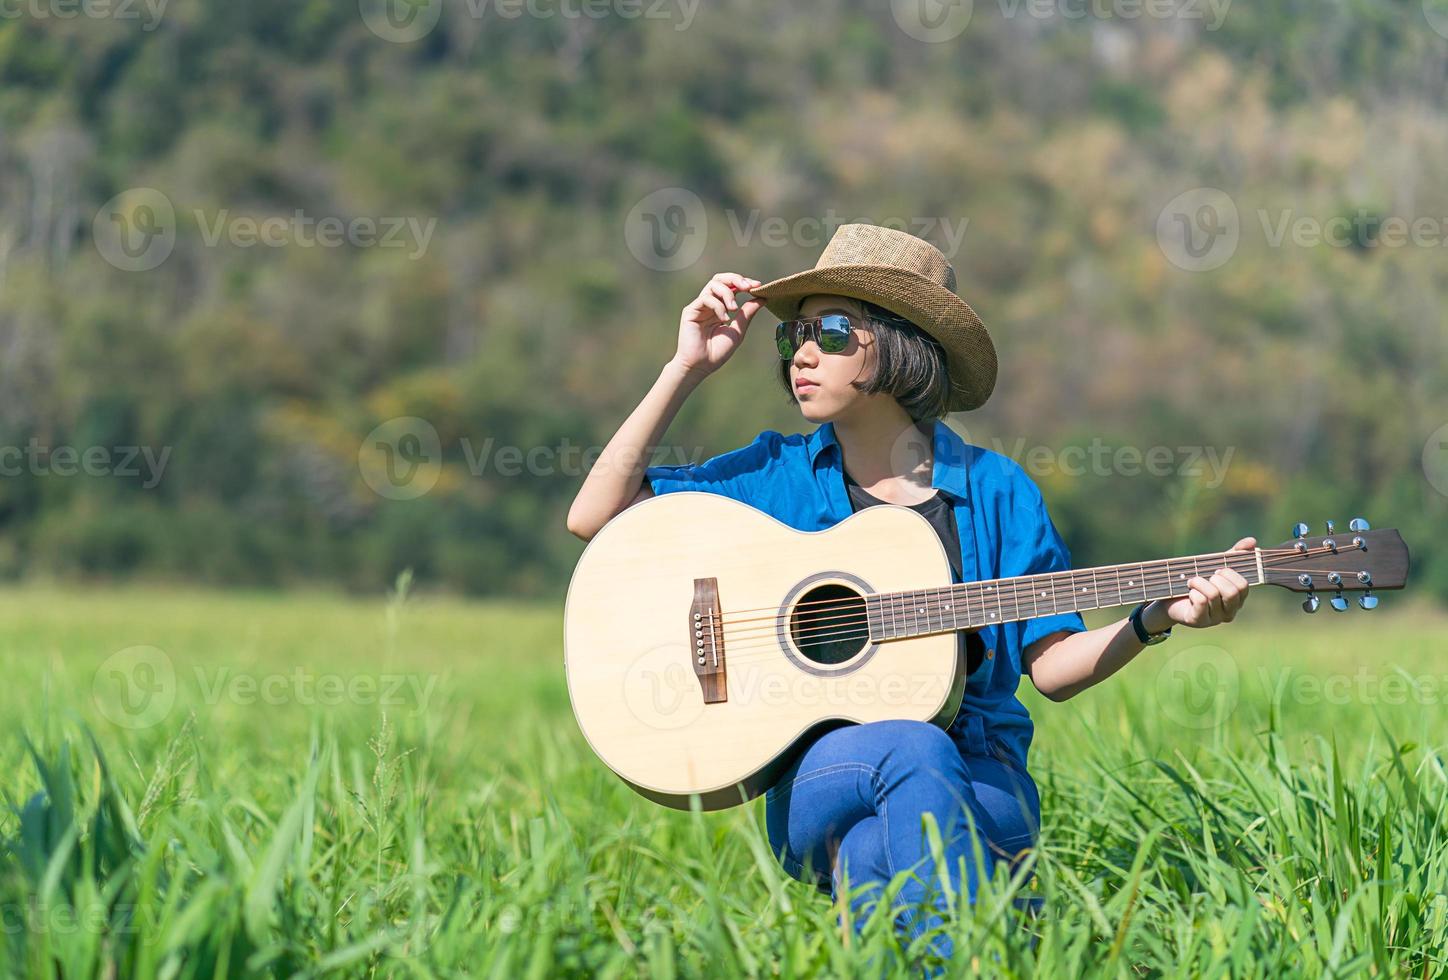 mulheres de cabelo curto usam chapéu e óculos de sol sentam-se tocando violão no campo de grama foto